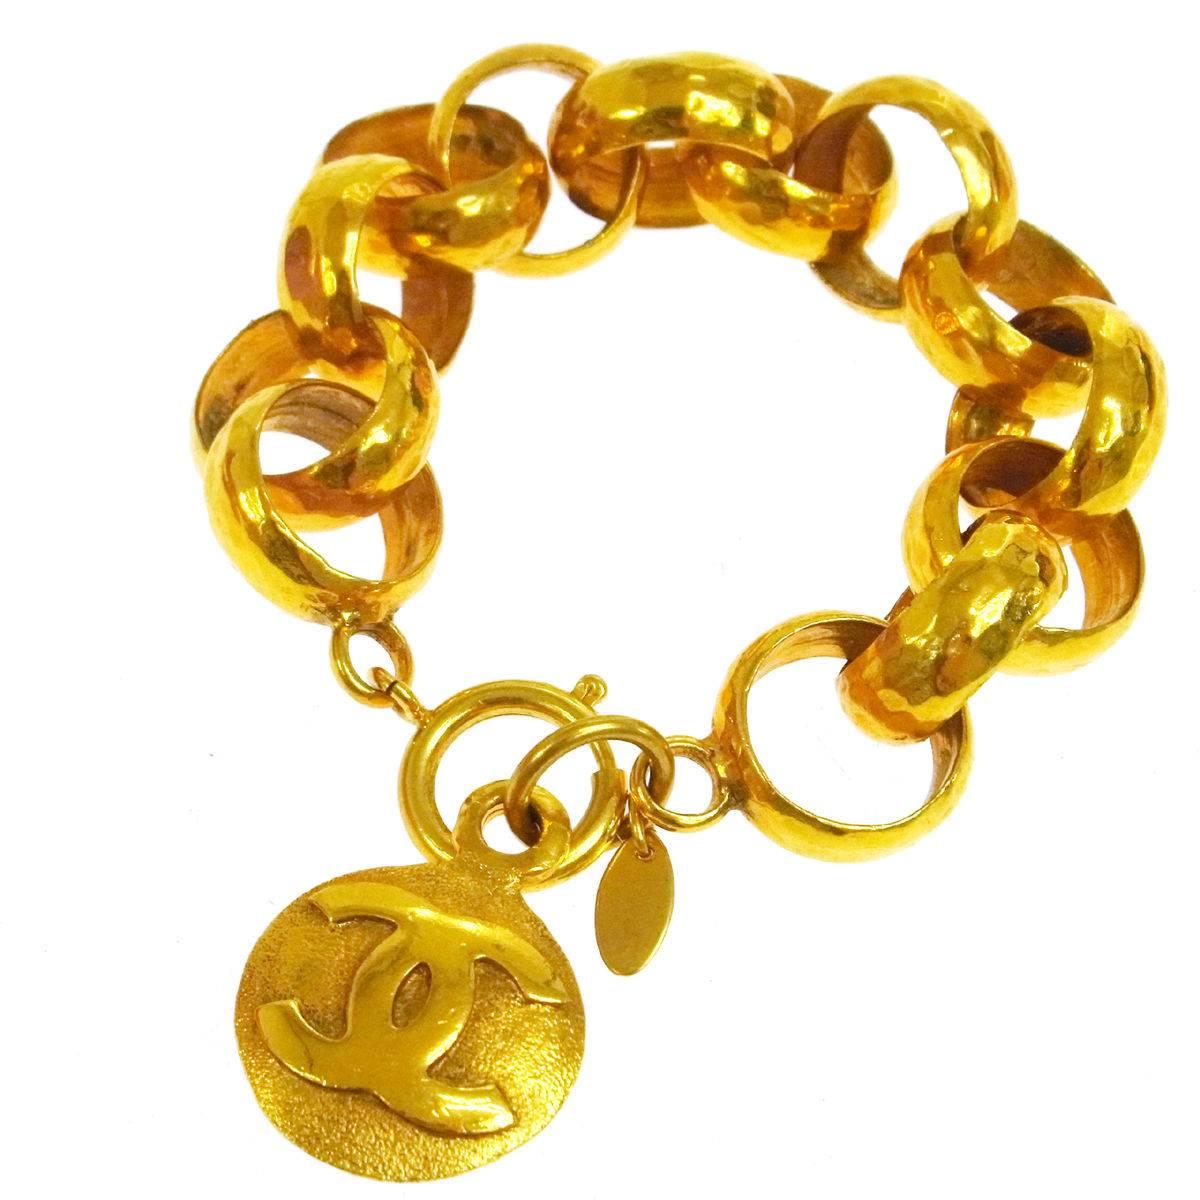 Chanel Vintage Gold Charm Coin Link Bracelet